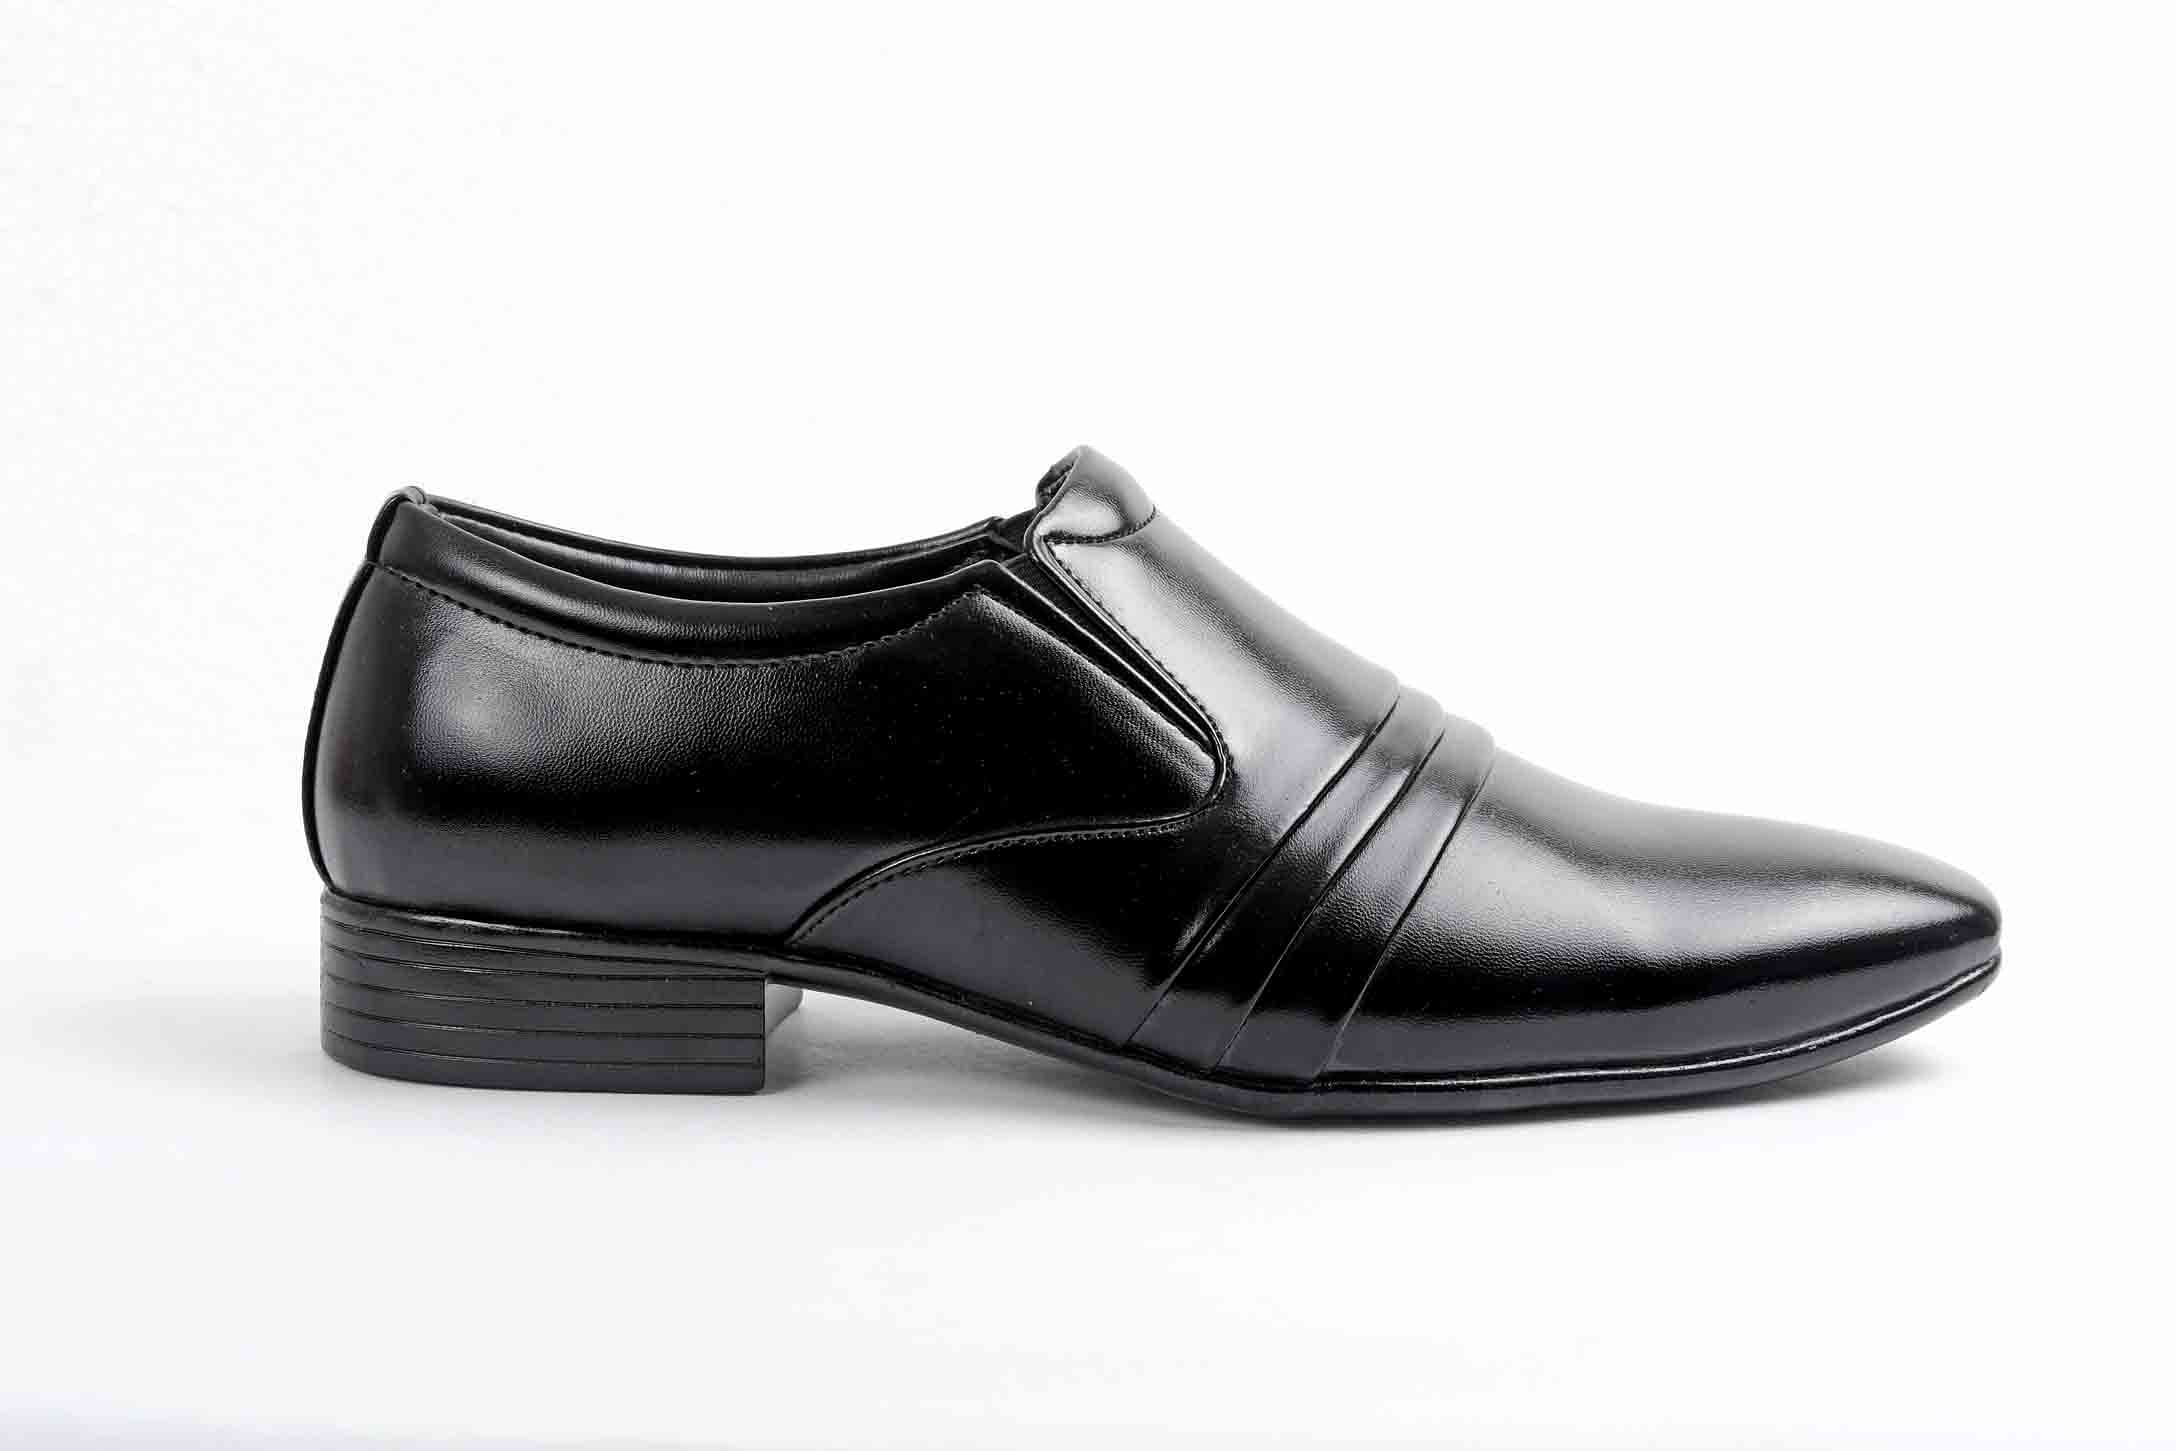 Pair-it Men moccasin Formal Shoes - Black- LZ-RYDER105